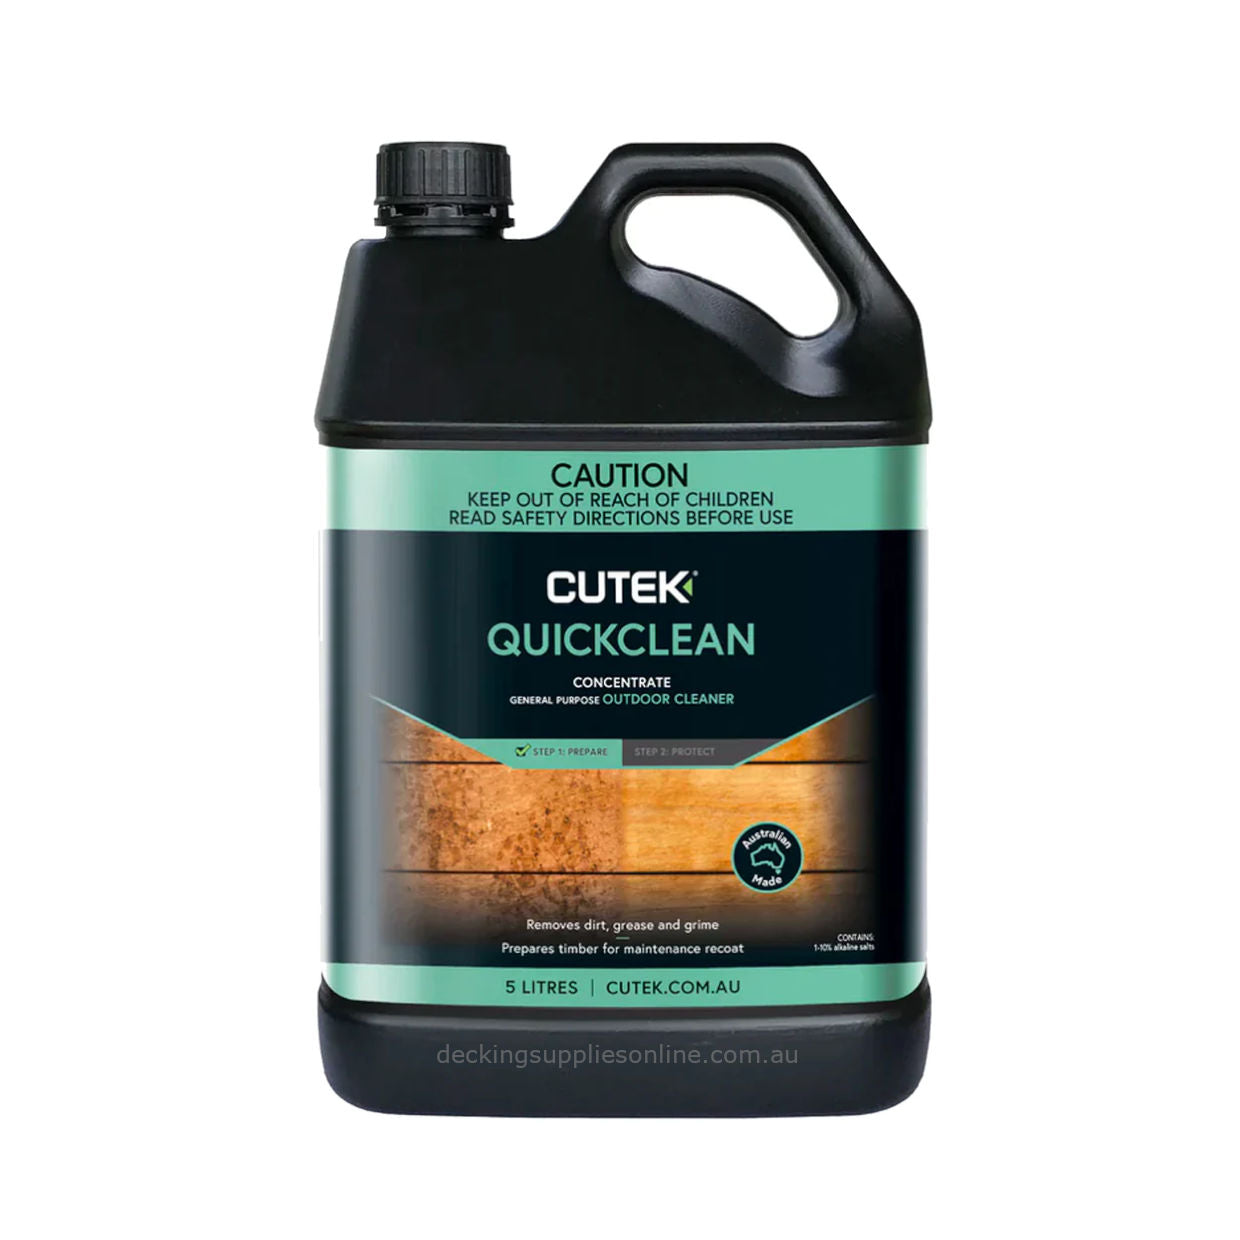 Cutek_Quick_Clean_5_Litre_Decking_Supplies_Online